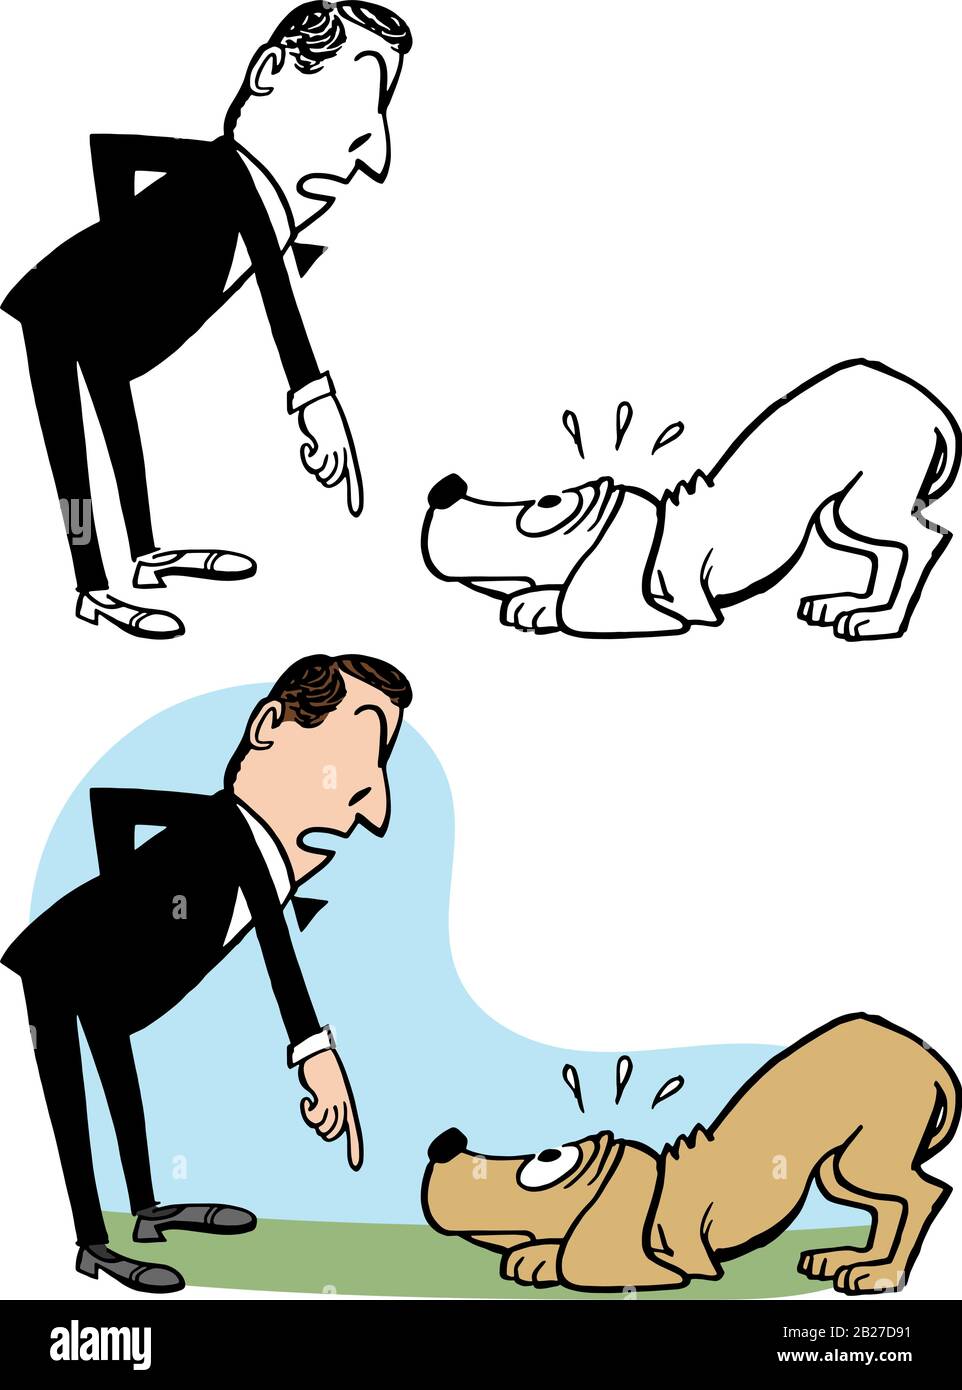 A cartoon of a man scolding a misbehaving dog. Stock Vector